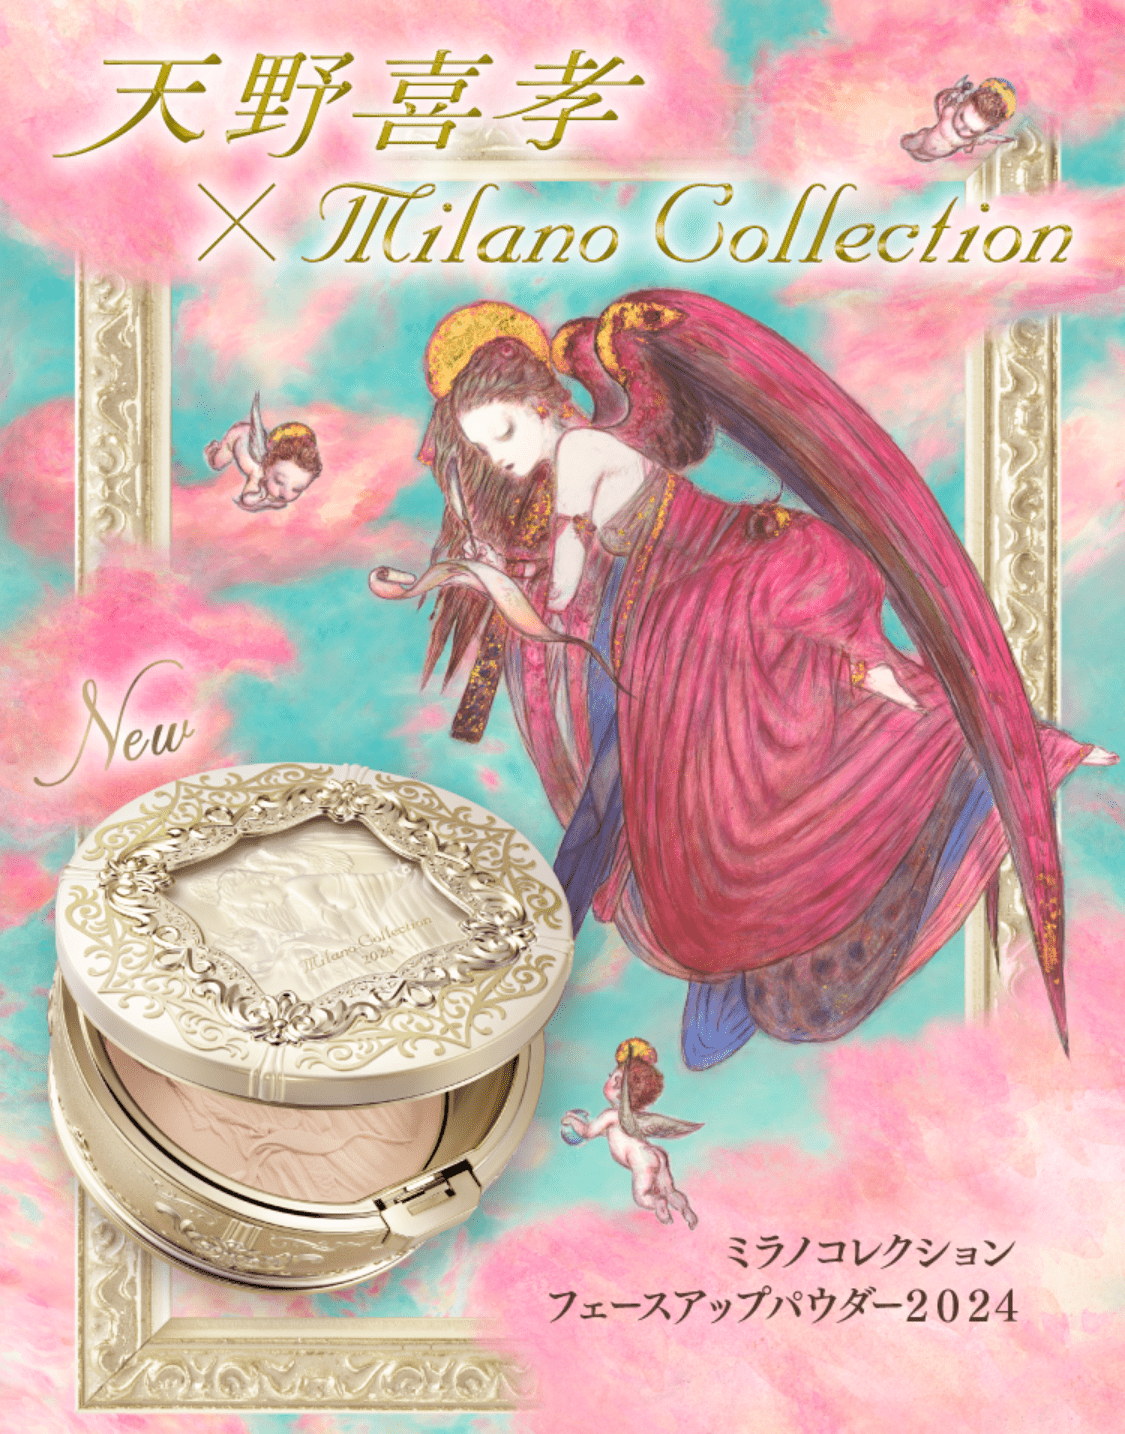 Milano Collection | カネボウ化粧品